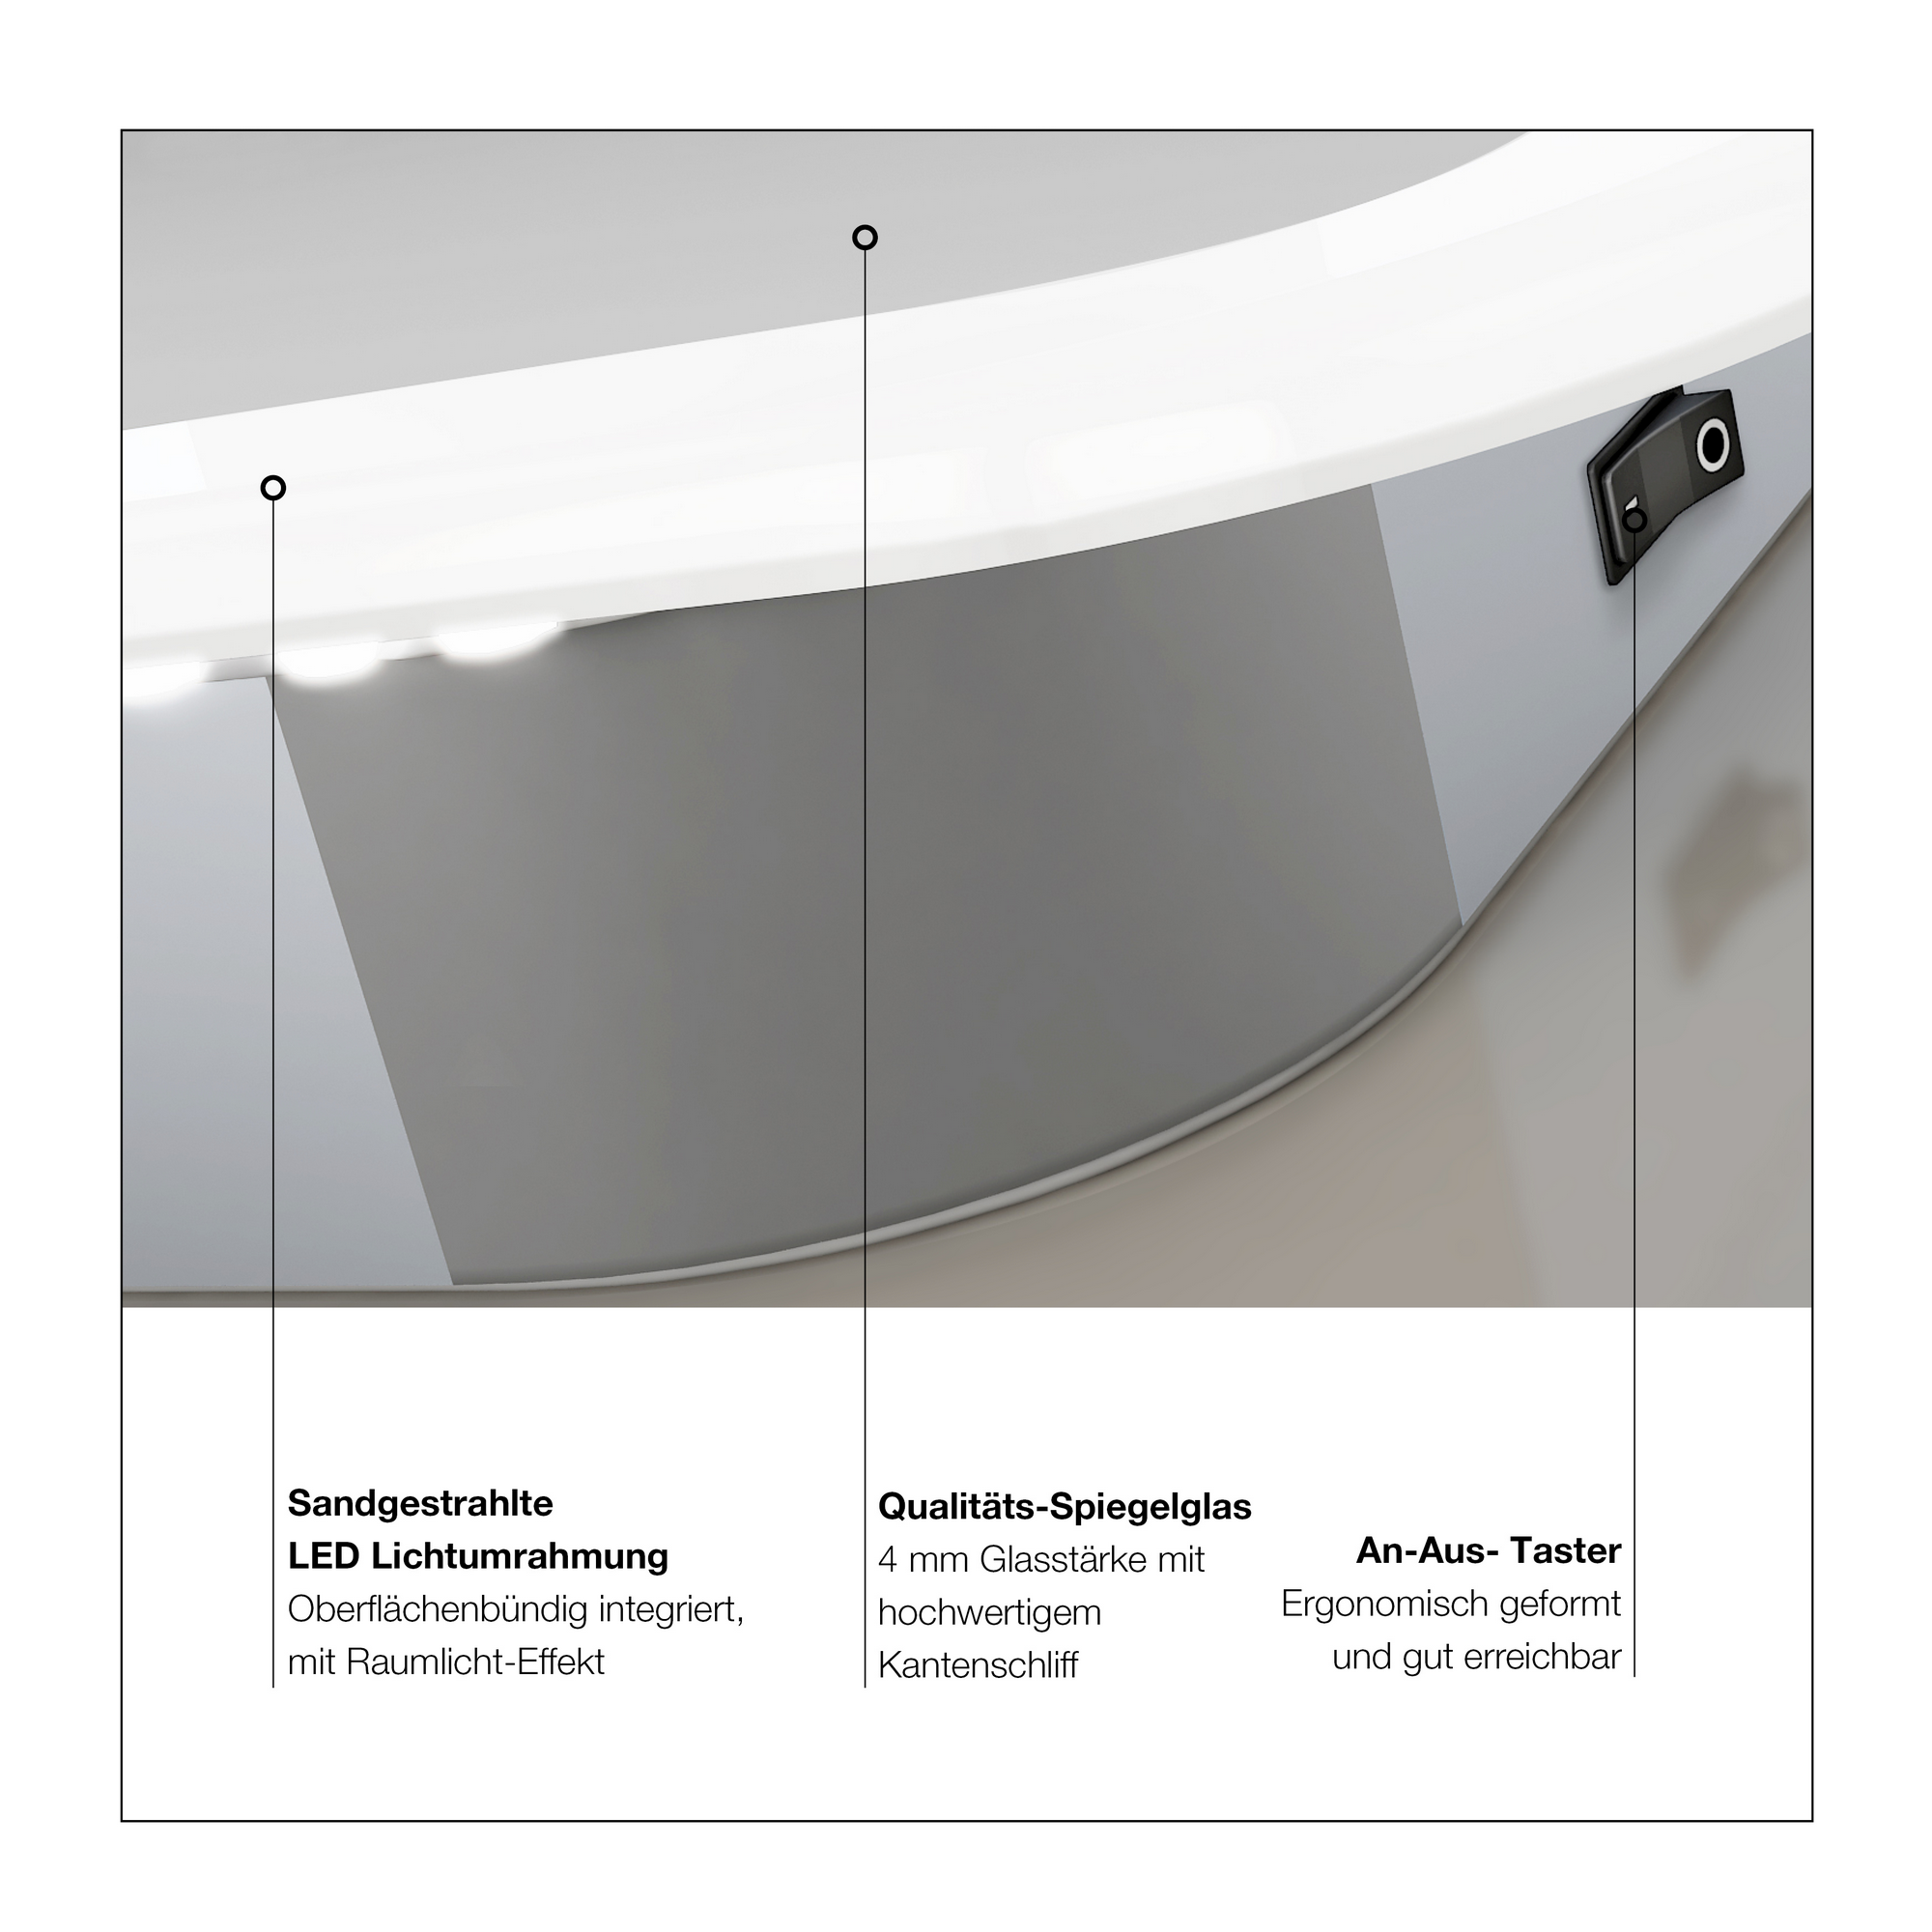 LED-Spiegel 'Silver Sunshine 2.0' mit Uhr 80 x 70 cm + product picture